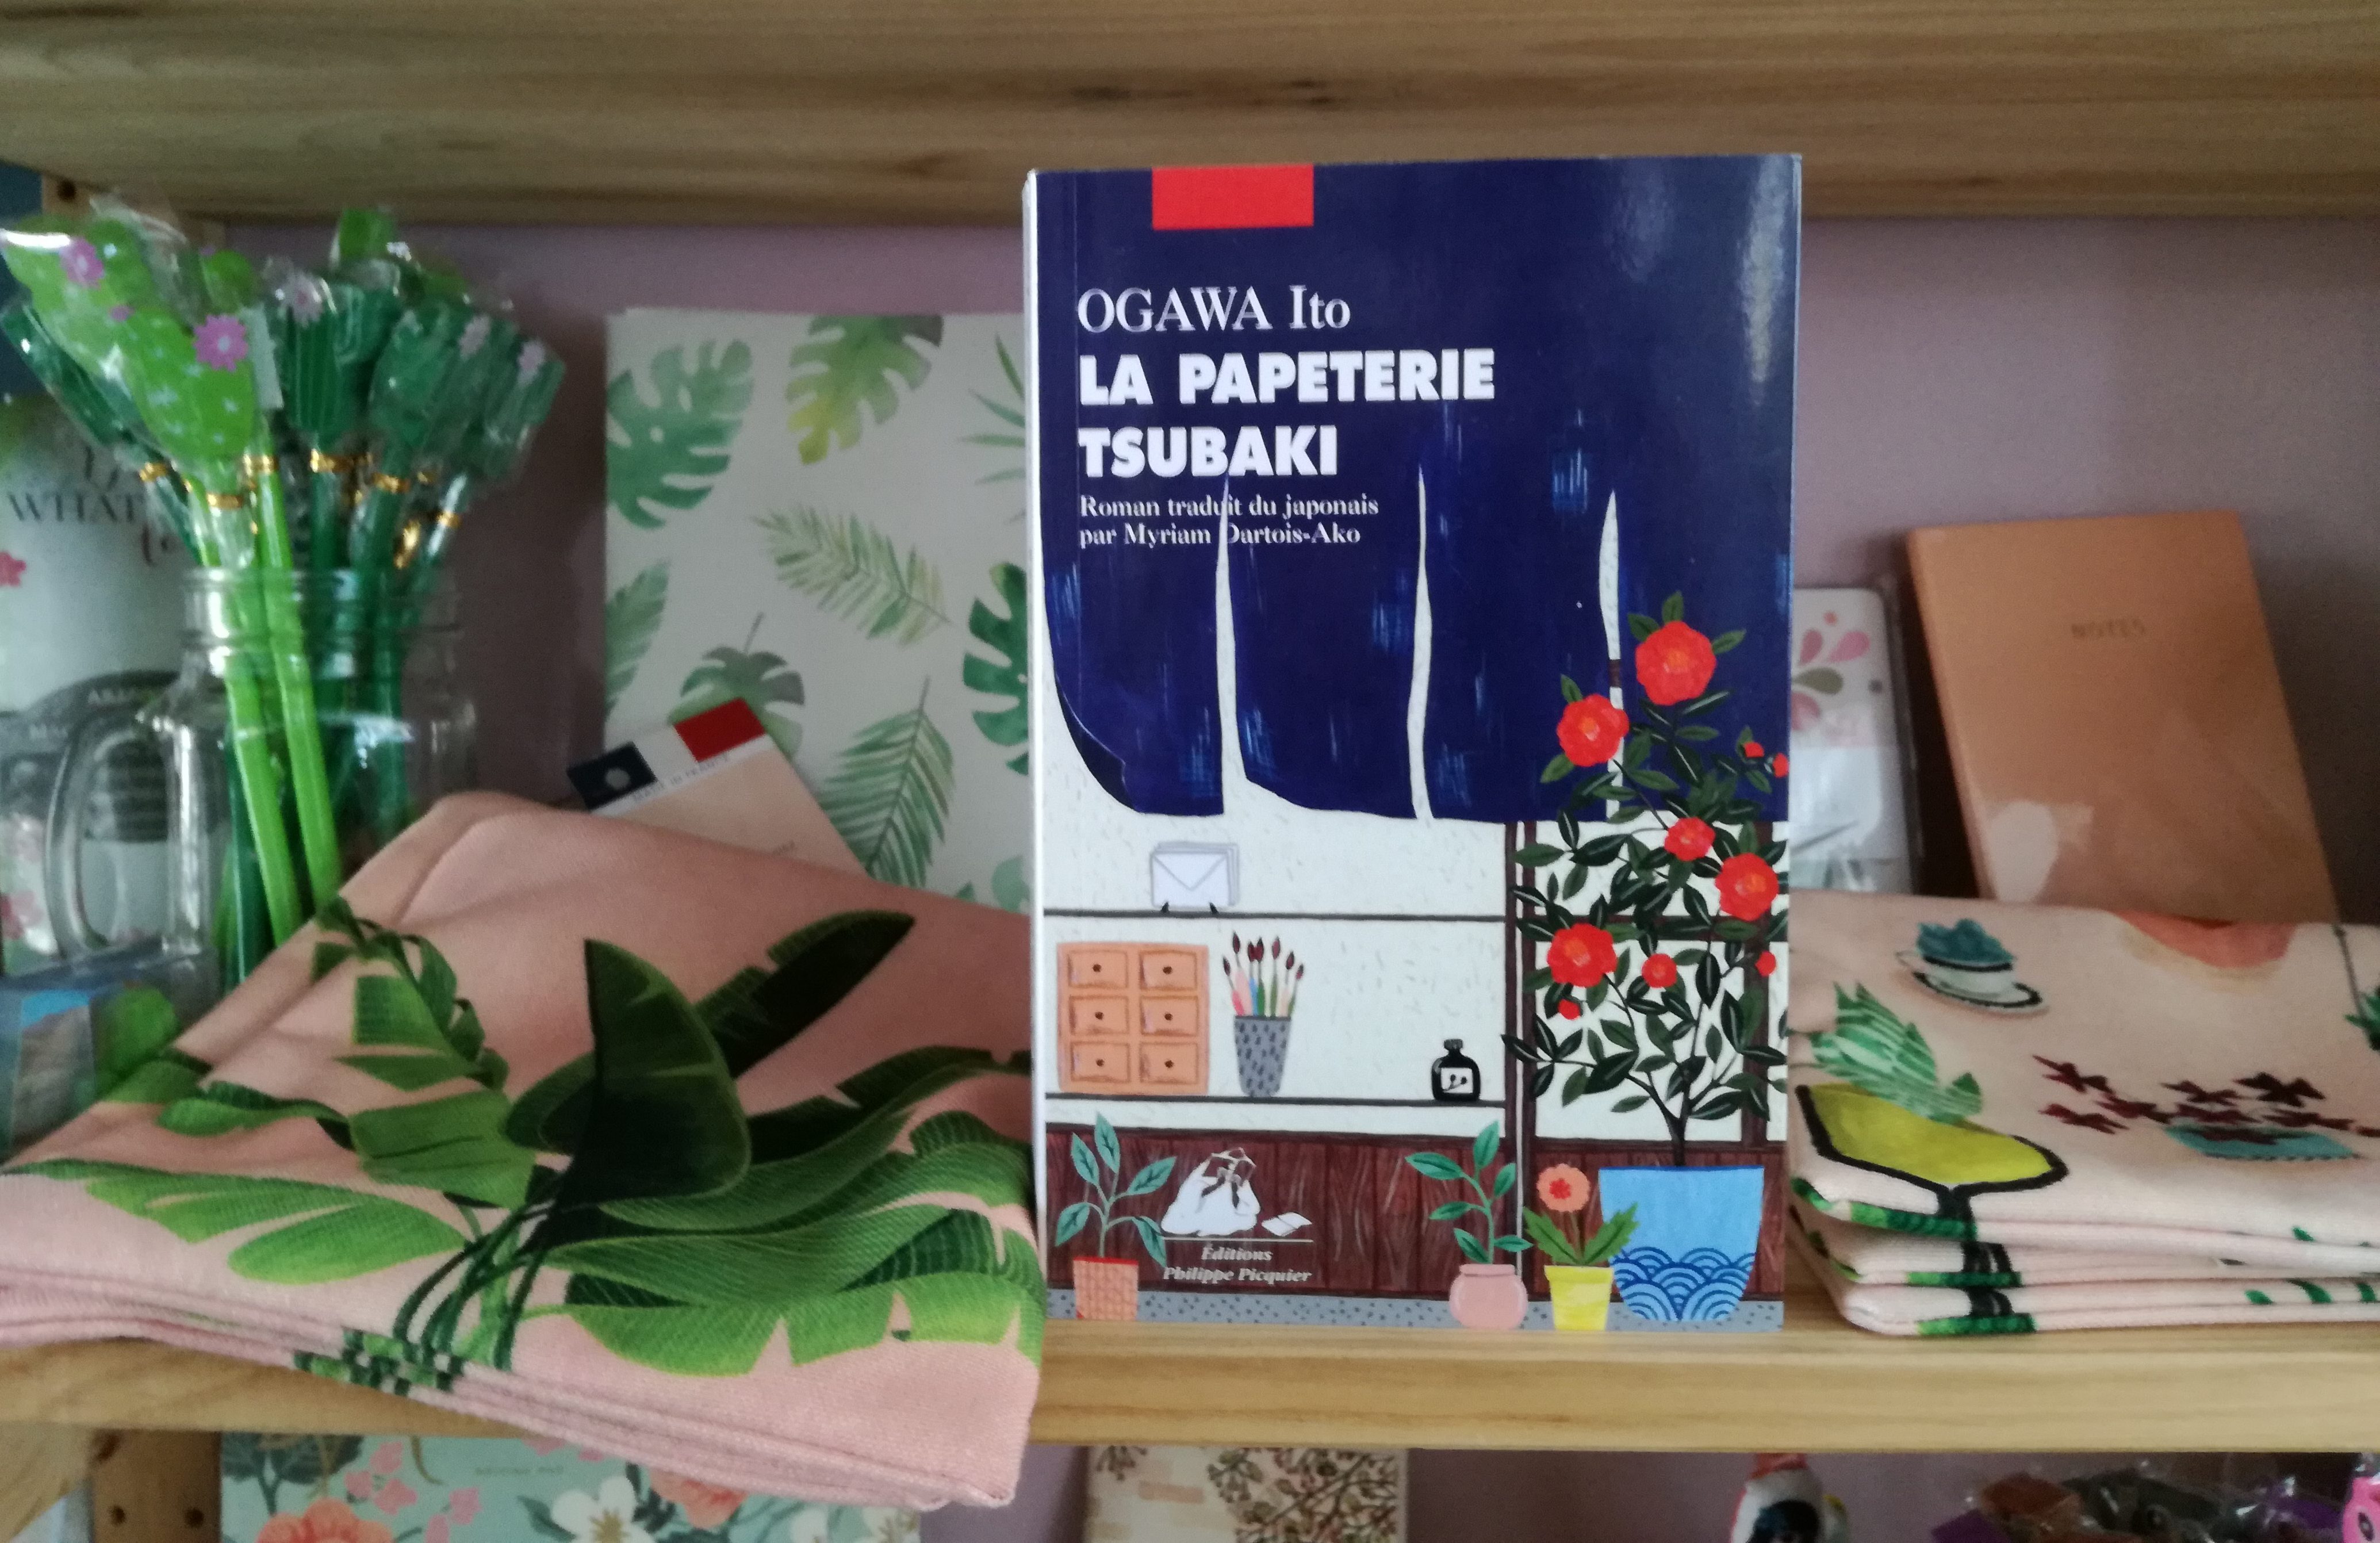 LA PAPETERIE TSUBAKI, Ogawa Ito, éditions Picquier - Librairie Au Temps Lire